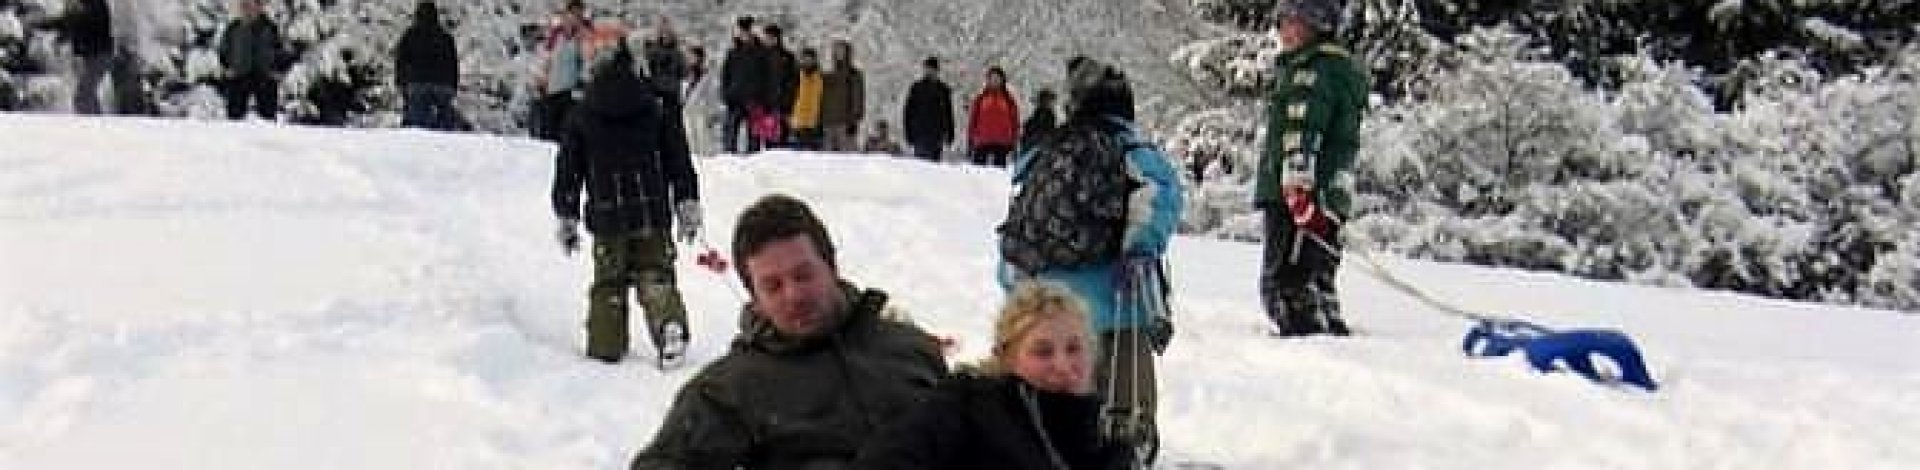 RaBauKi veranstaltet zweite Winterwanderung